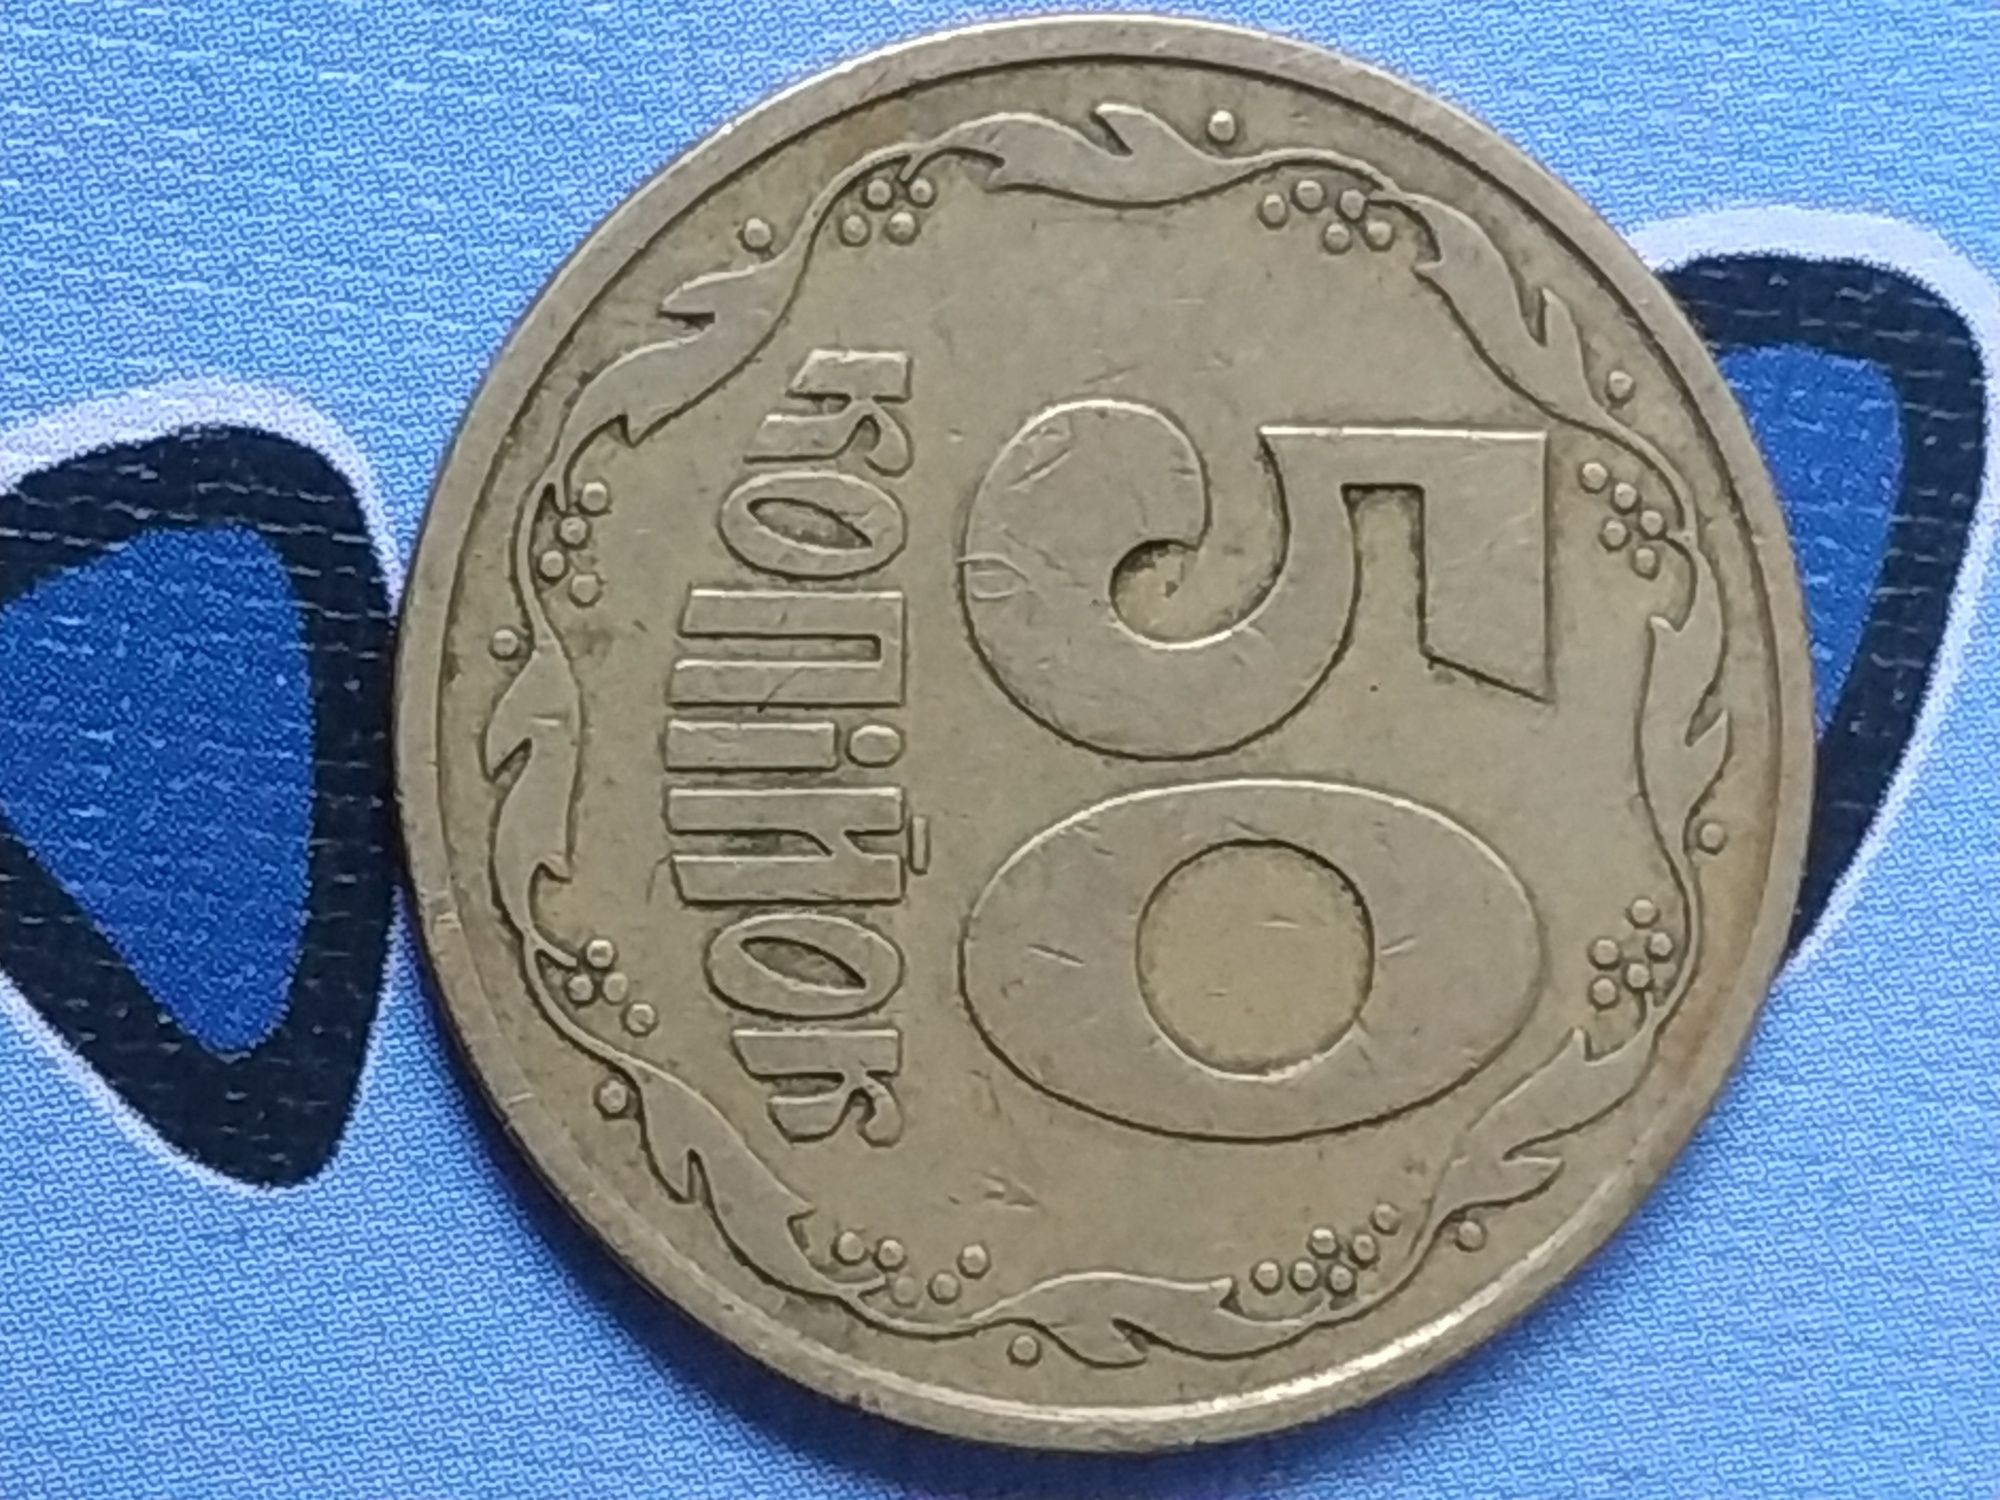 50 копеек 1992, две монеты с полоской на колоске